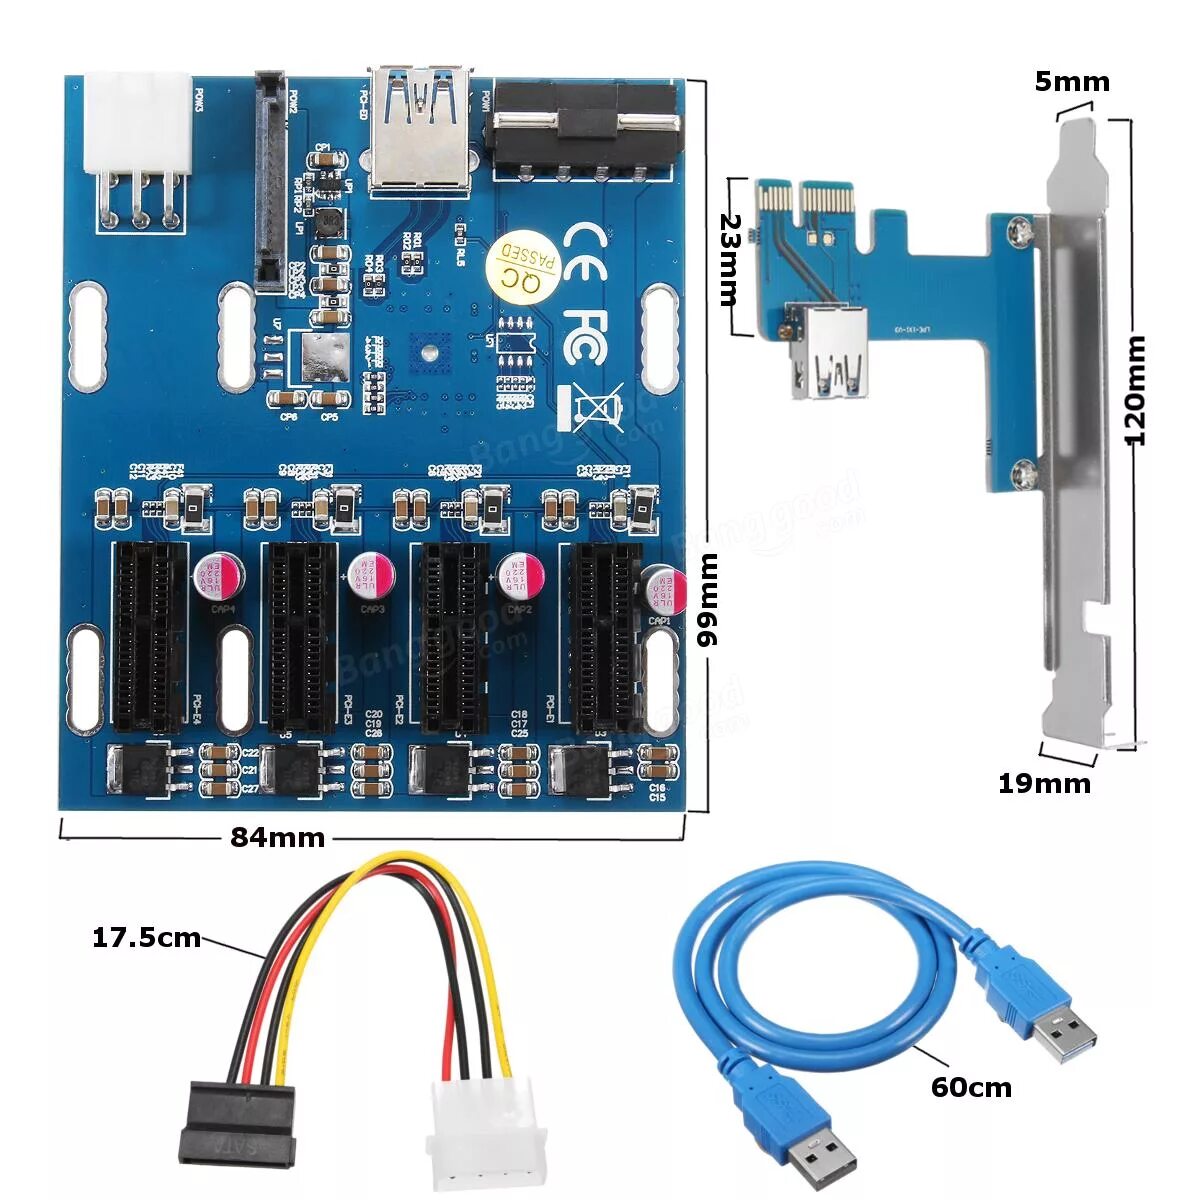 MYPADS PCI-E x1 Hub USB 3.0. Райзер PCI-E x1 схема. 4 Портовый коммутатор PCI-E. Райзер для звуковой карты PCI-E x1.